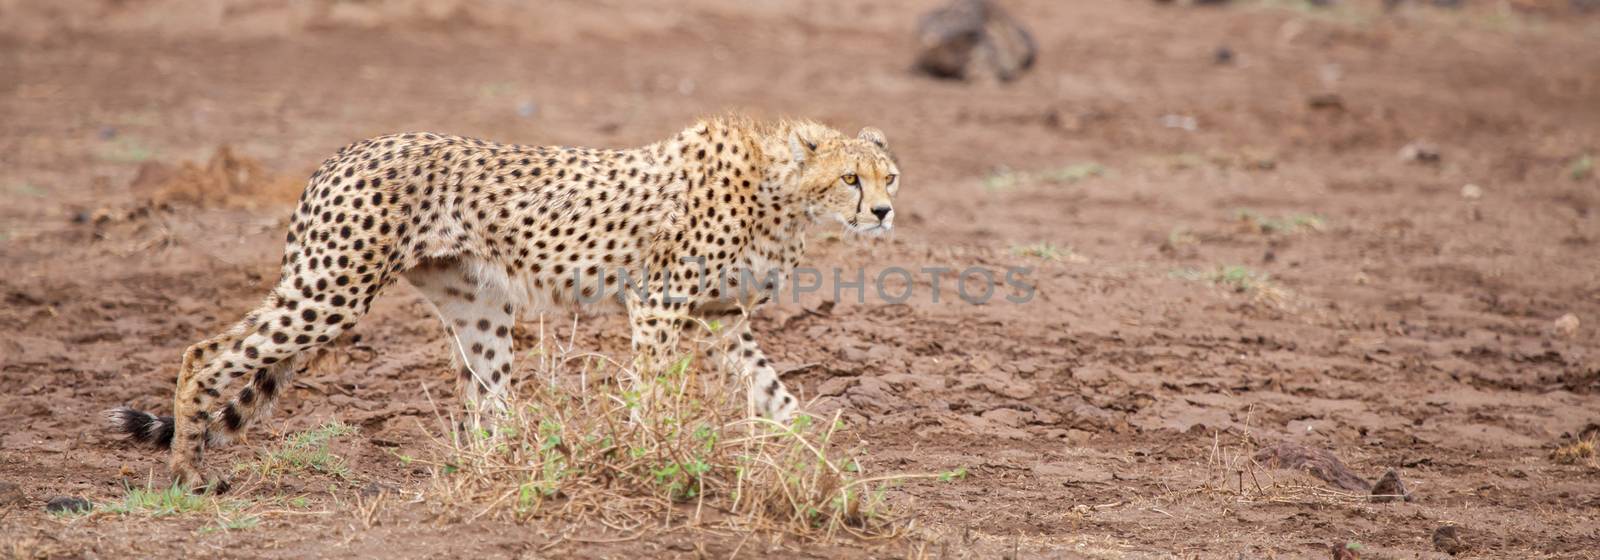 a gepard is walking in the savannah